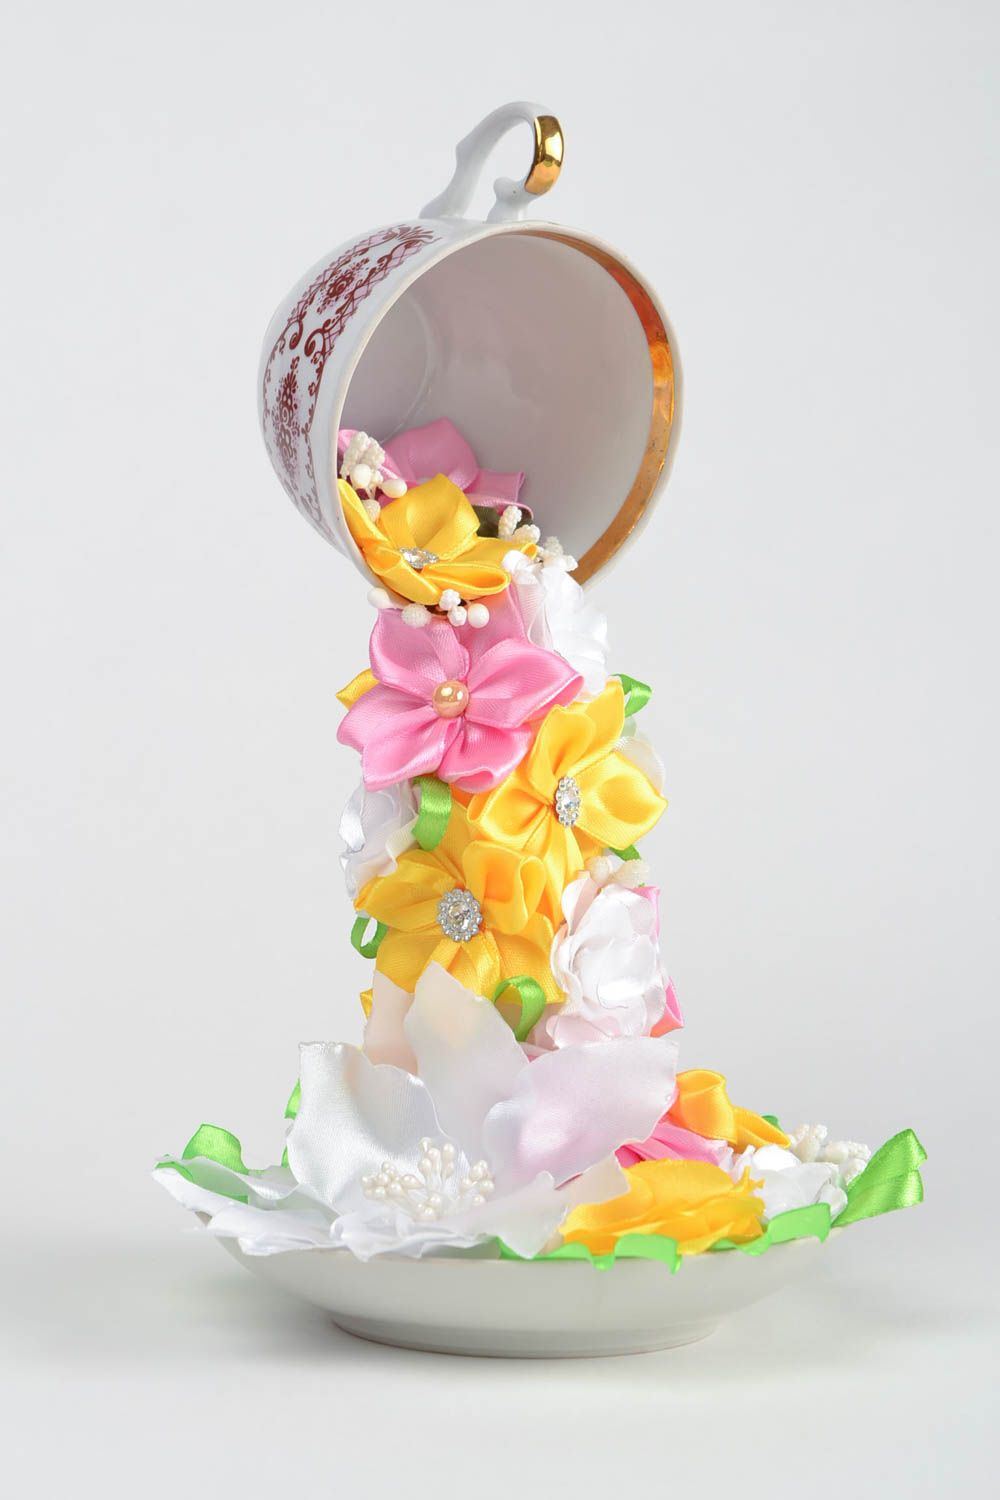 Летающая чашка с цветами из атласных лент проливашка ручной работы для декора фото 1